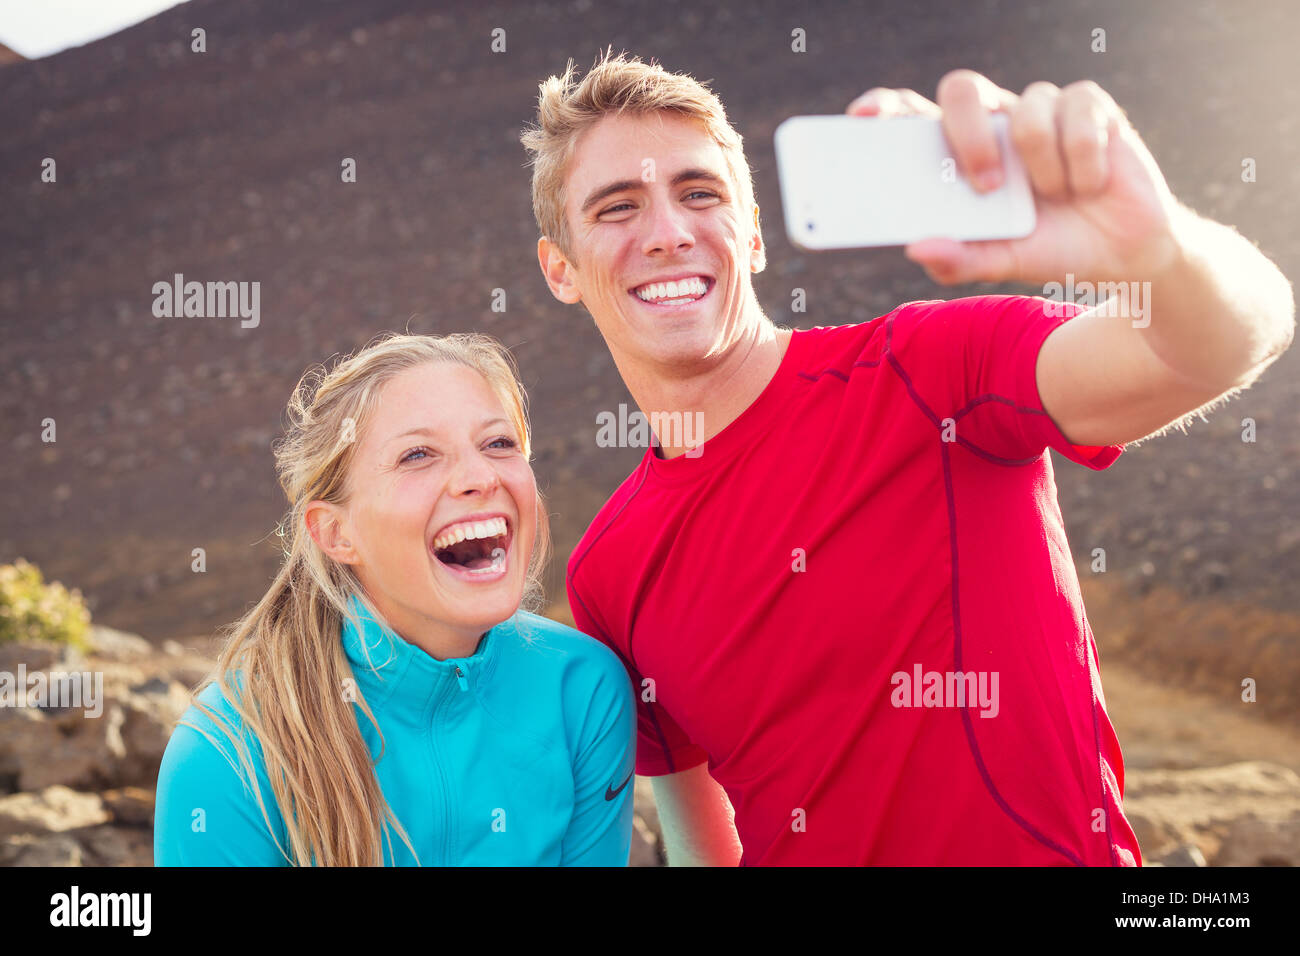 Jeune couple athlétique attrayant taking photo d'eux-mêmes avec smart phone, faisant un selfies Banque D'Images